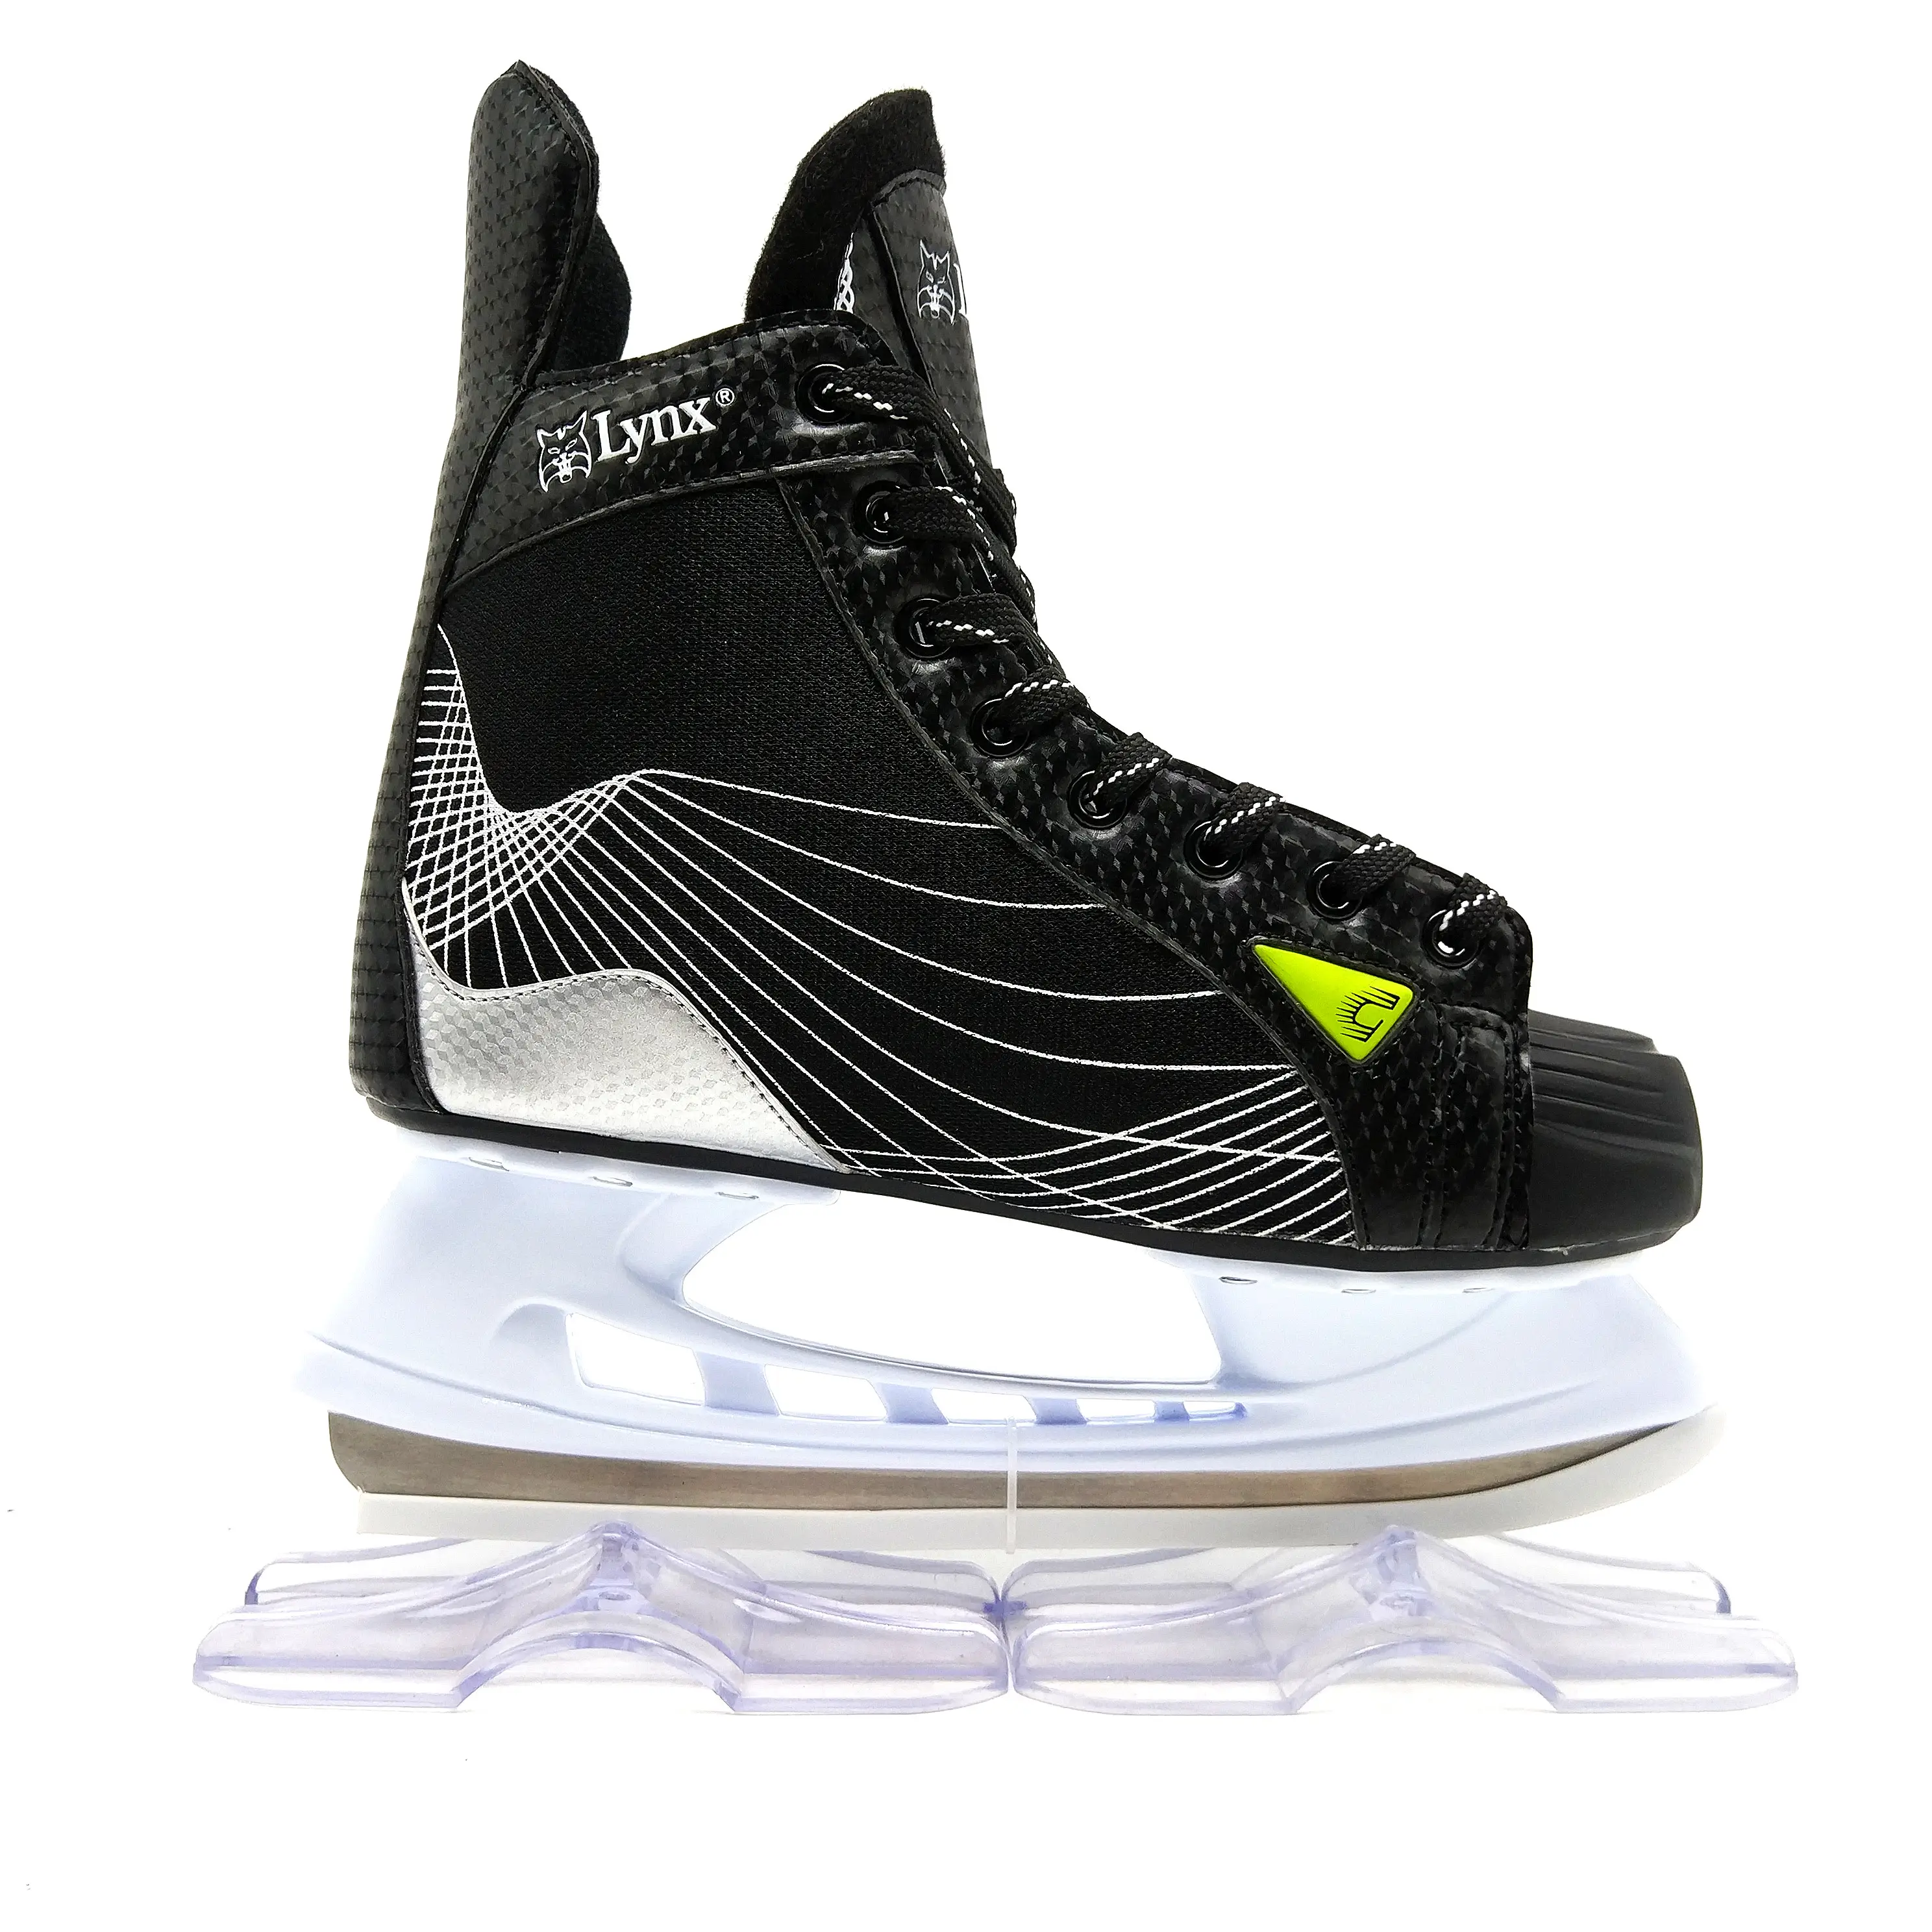 2018 गर्म बिक्री सोया लूना बर्फ स्केट जूते के लिए बच्चों और पेशेवर वयस्कों आइस हॉकी पटरियां